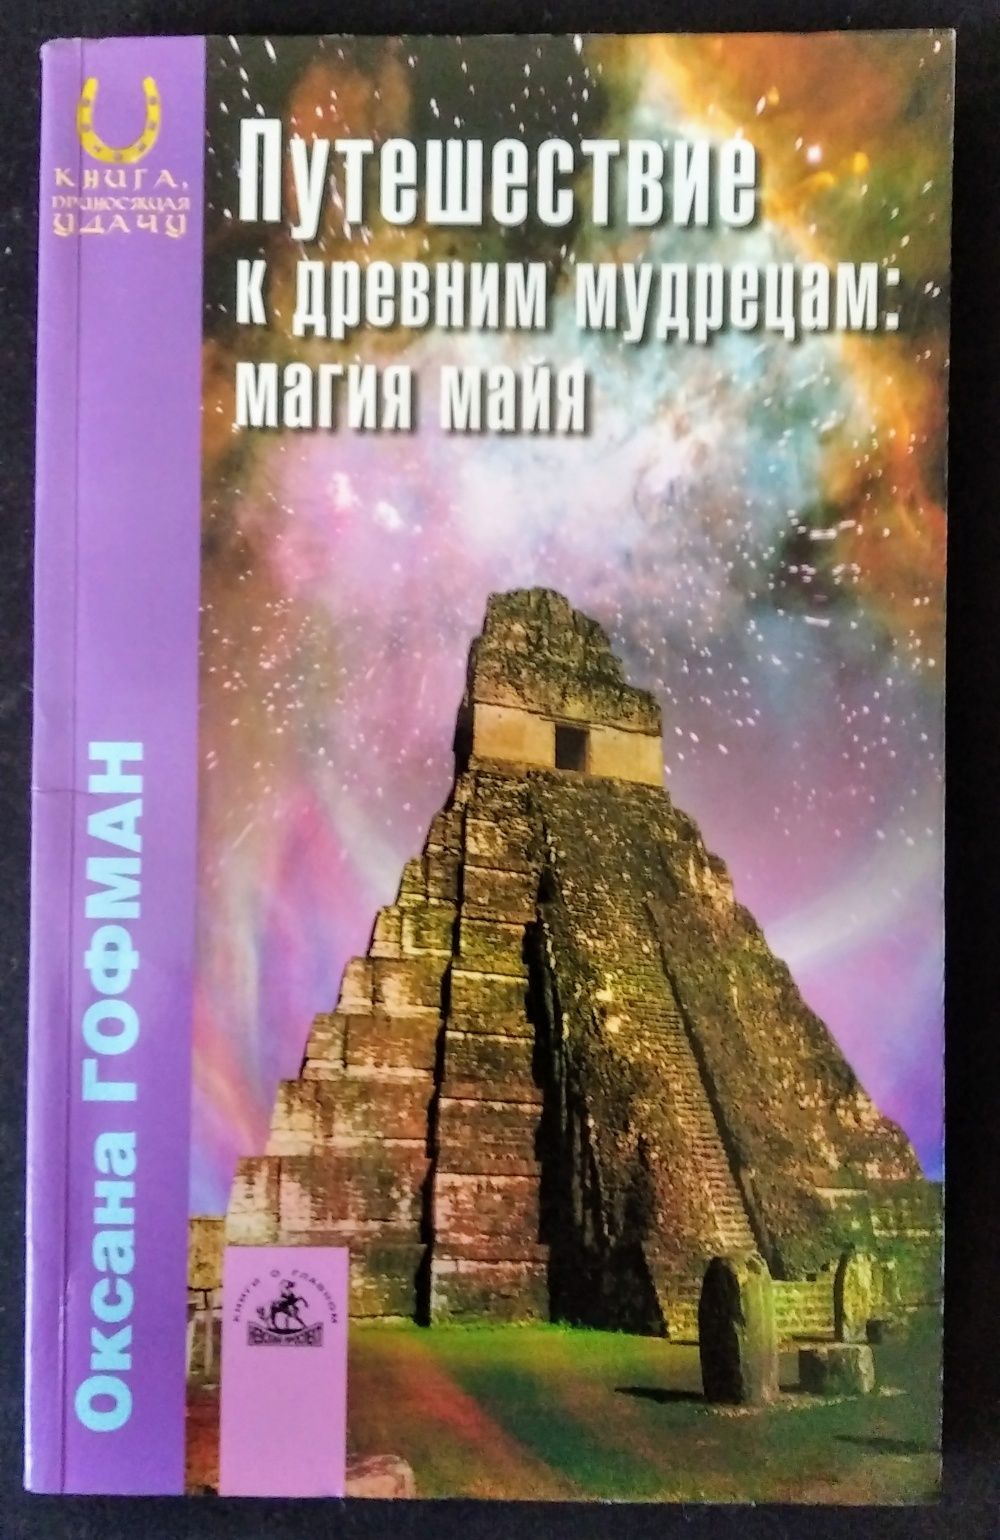 О. Гофман - Путешествие к древним мудрецам: магия майя